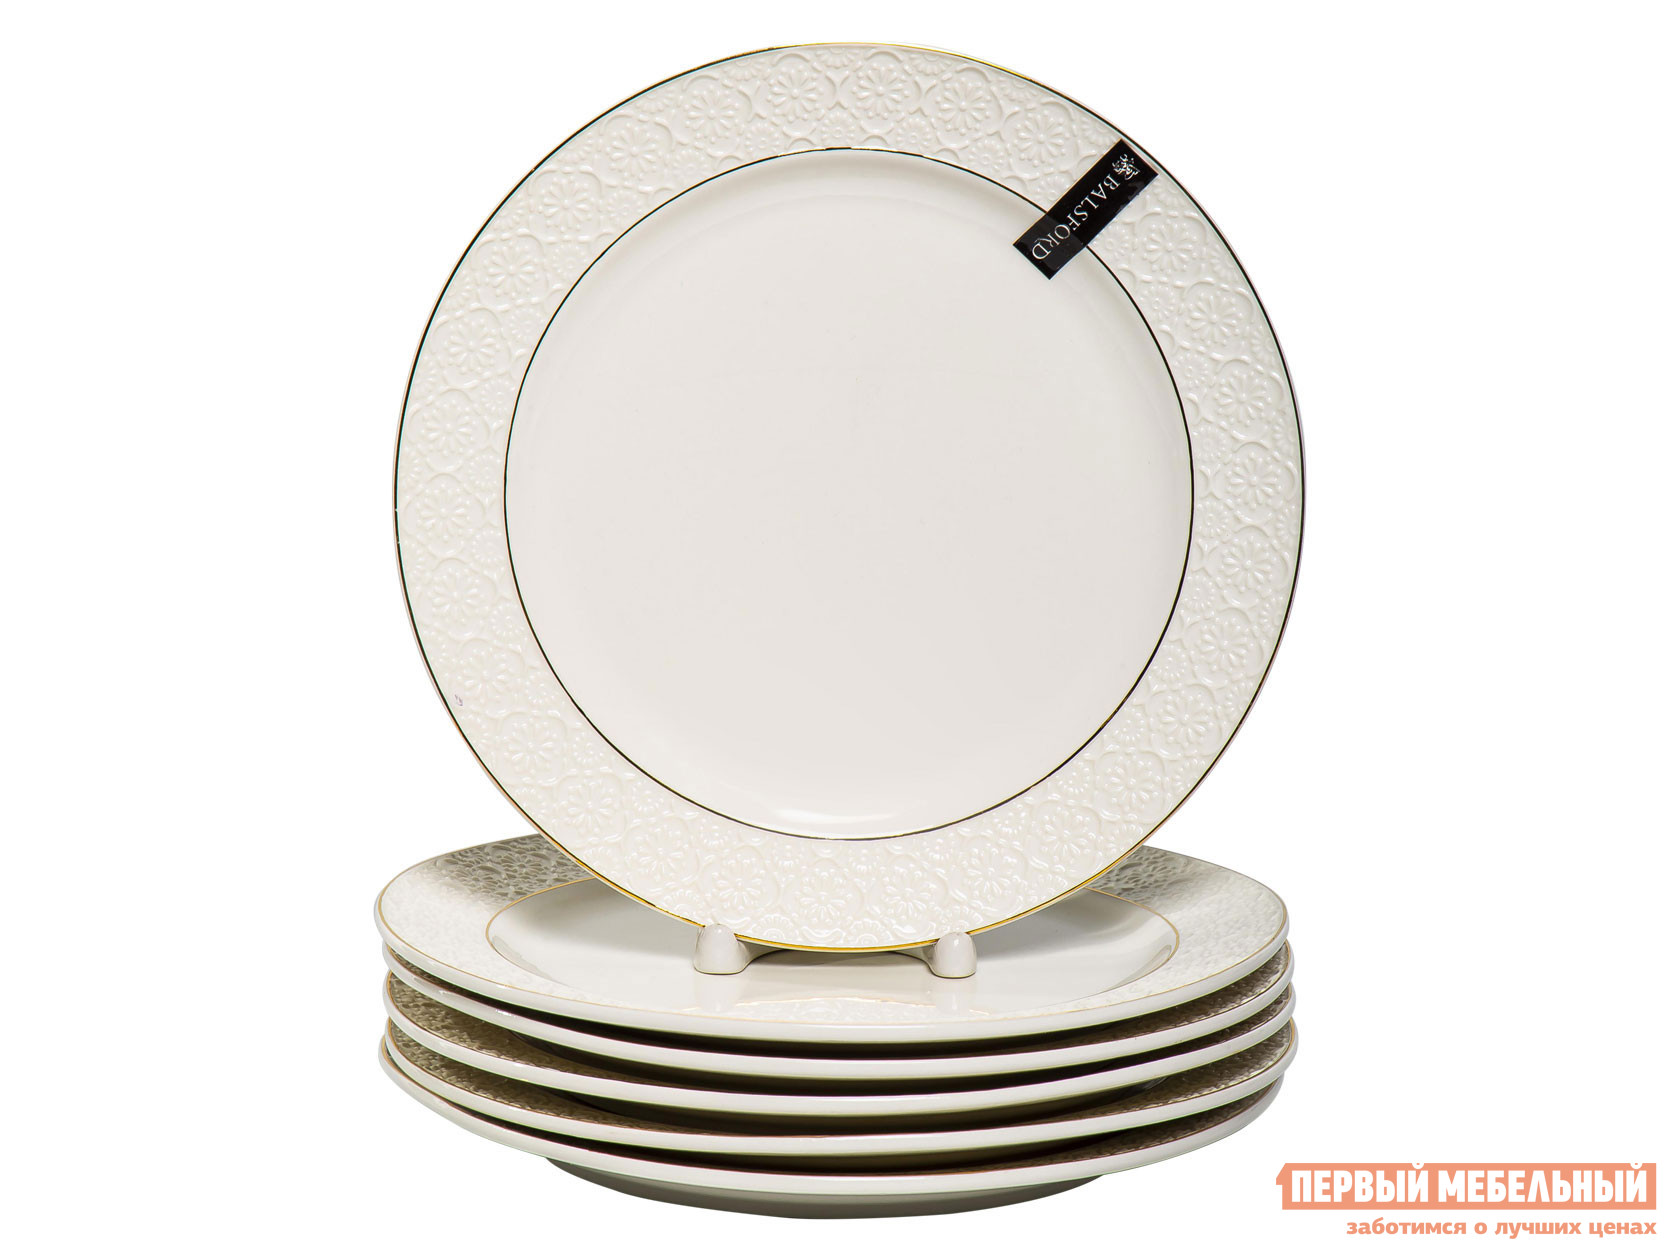 Комплект столовой посуды  Астерия 6 предметов Белый, фарфор